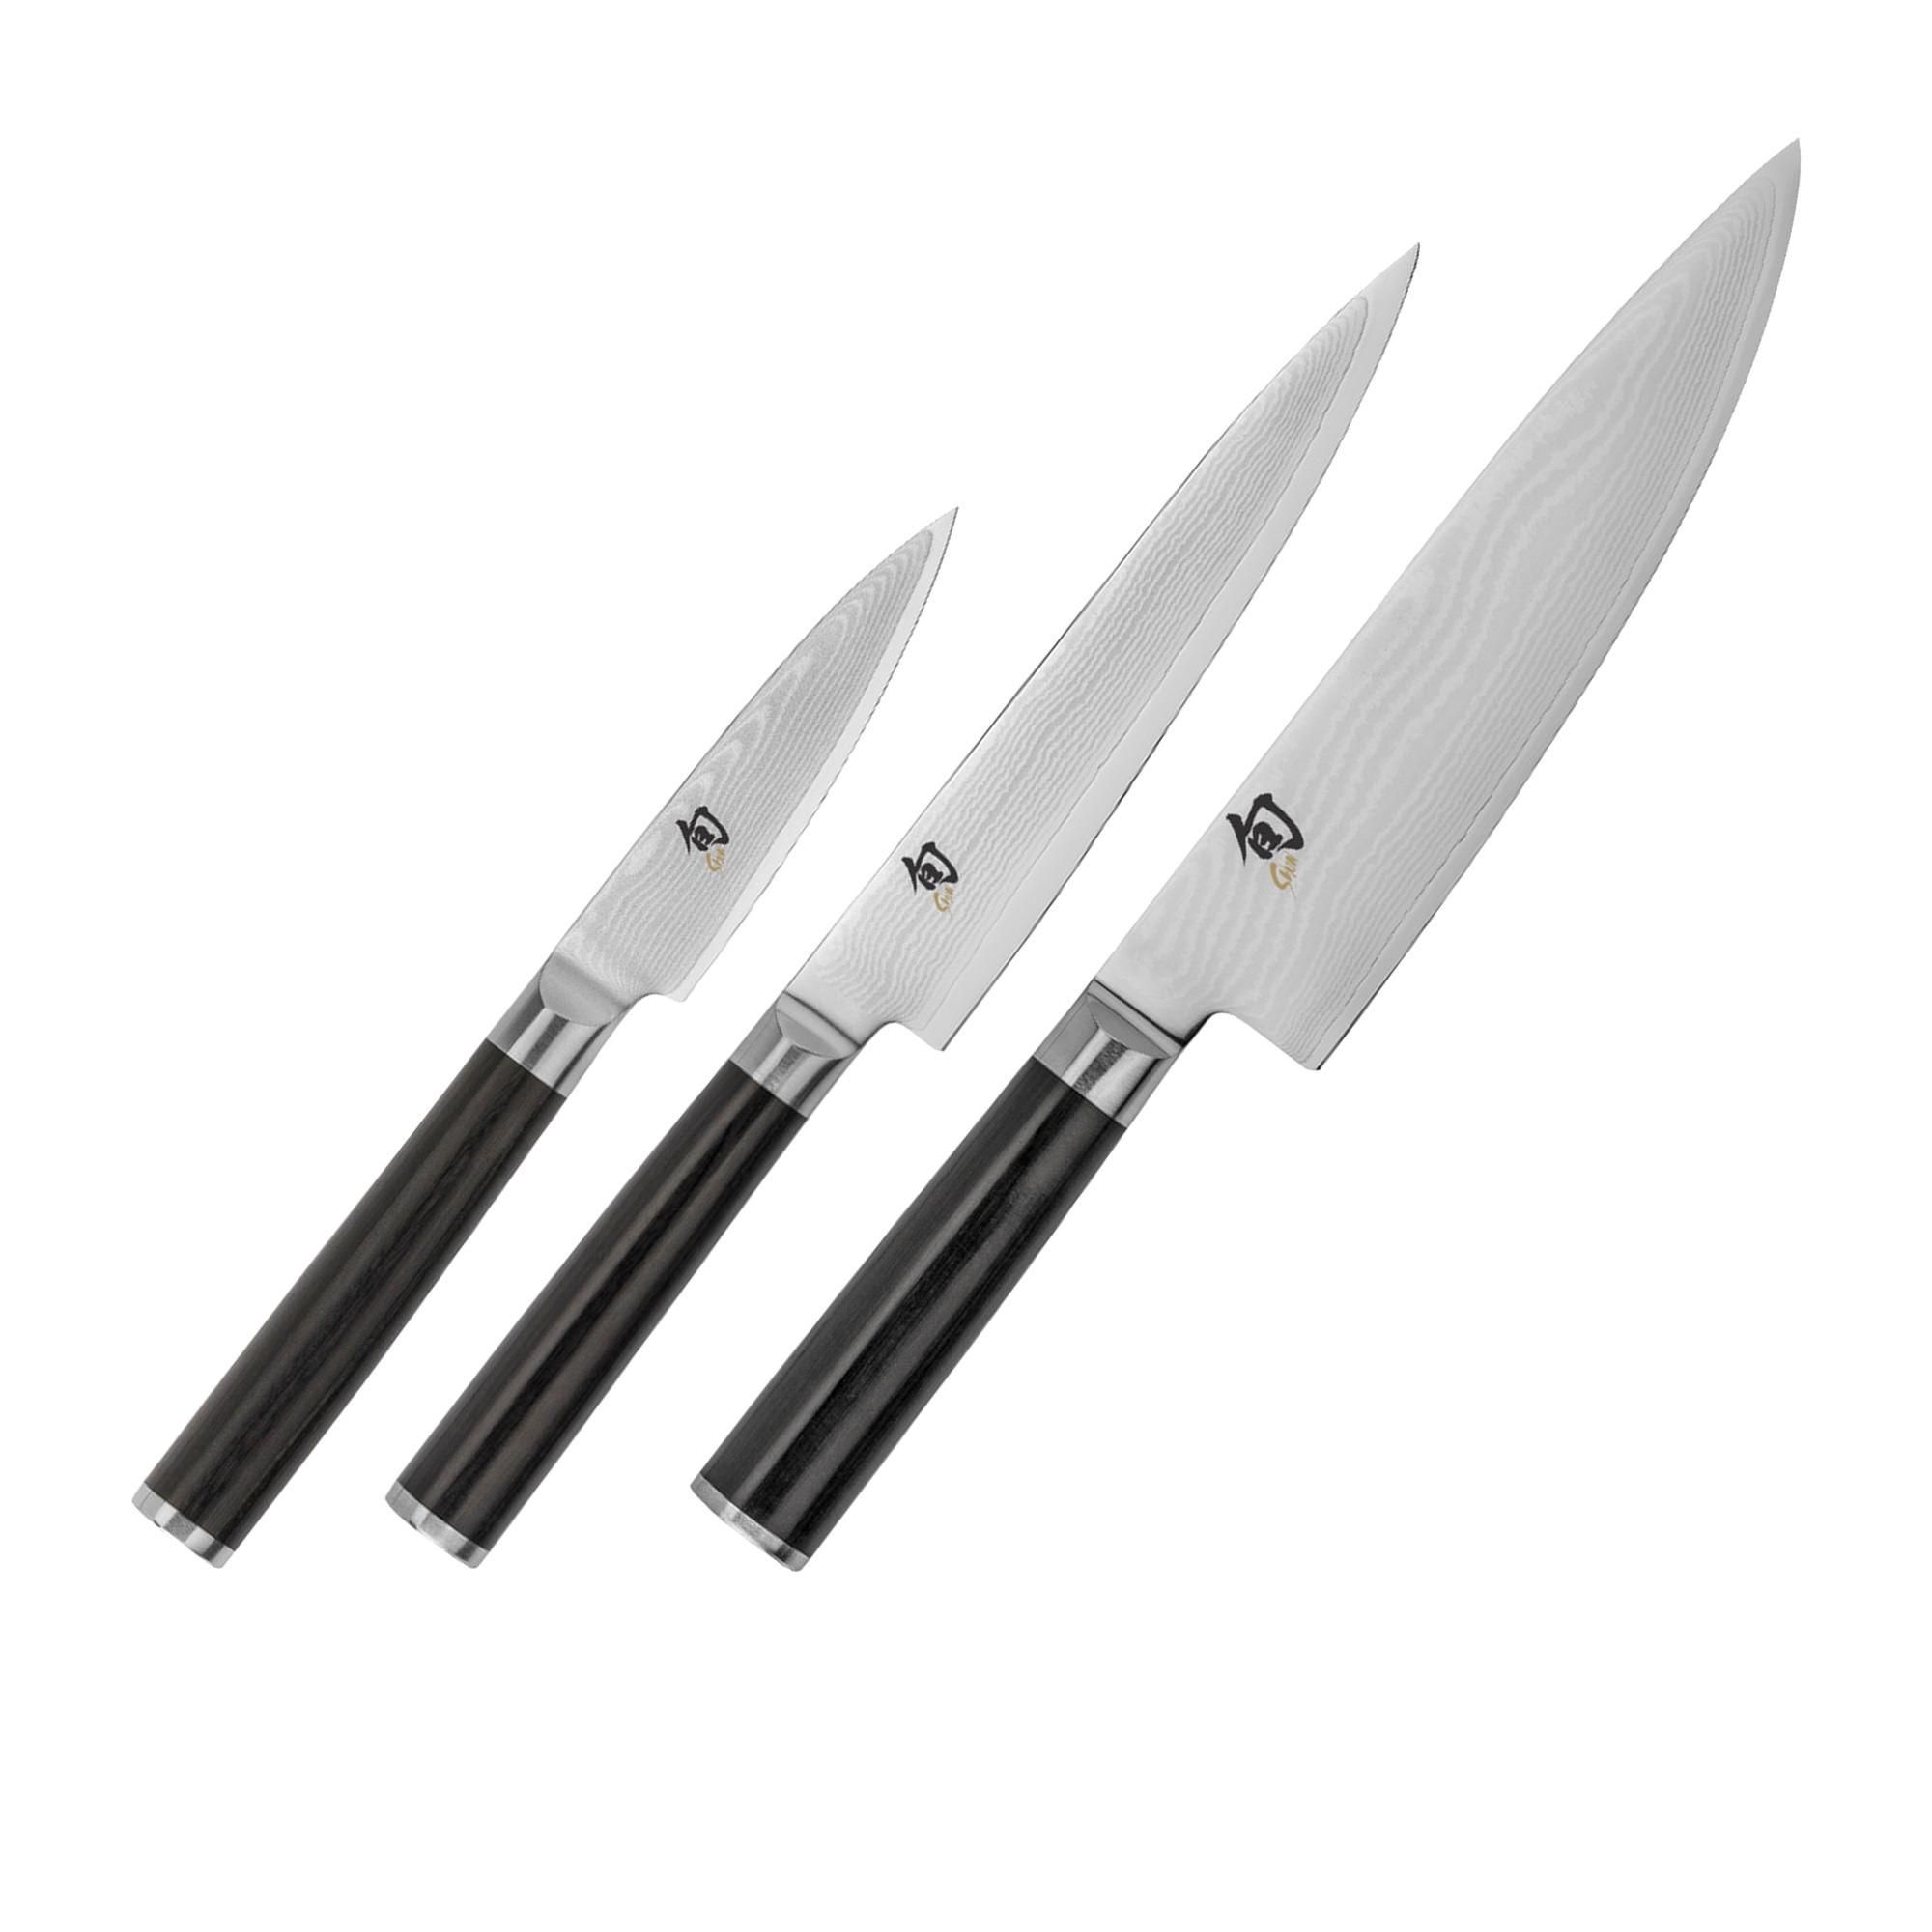 Shun Classic 3pc Knife Set Image 1